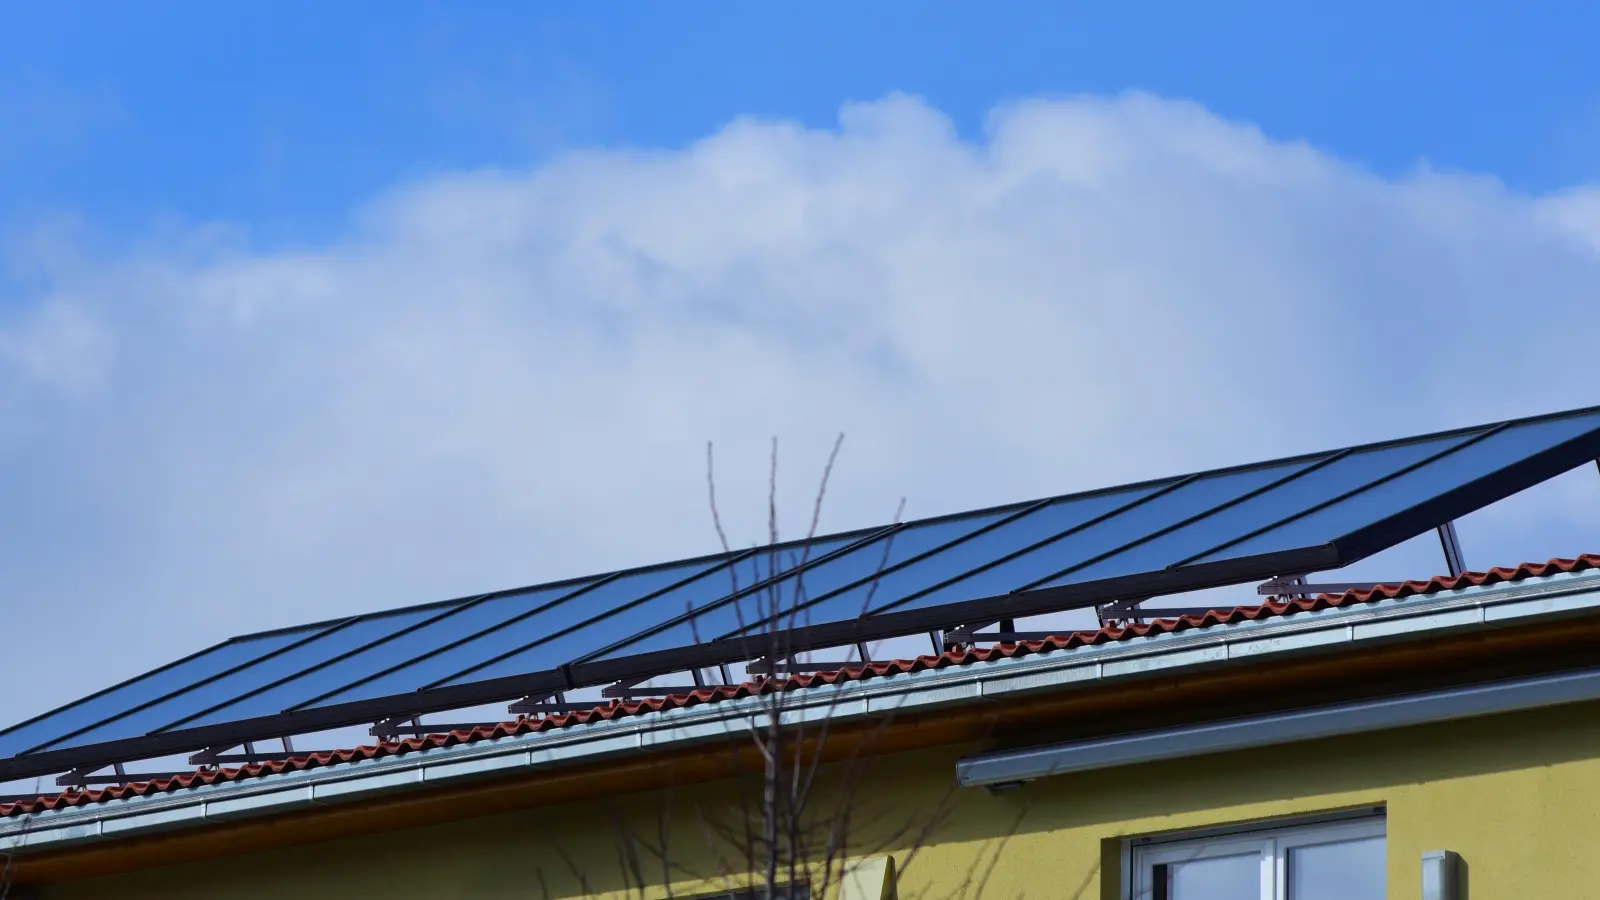 Photovoltaik-Anlagen auf Dächern sind auch in der Region immer häufiger zu sehen. Der Ausbau der Solarenergie schreitet voran. (Archivfoto: Jim Albright)